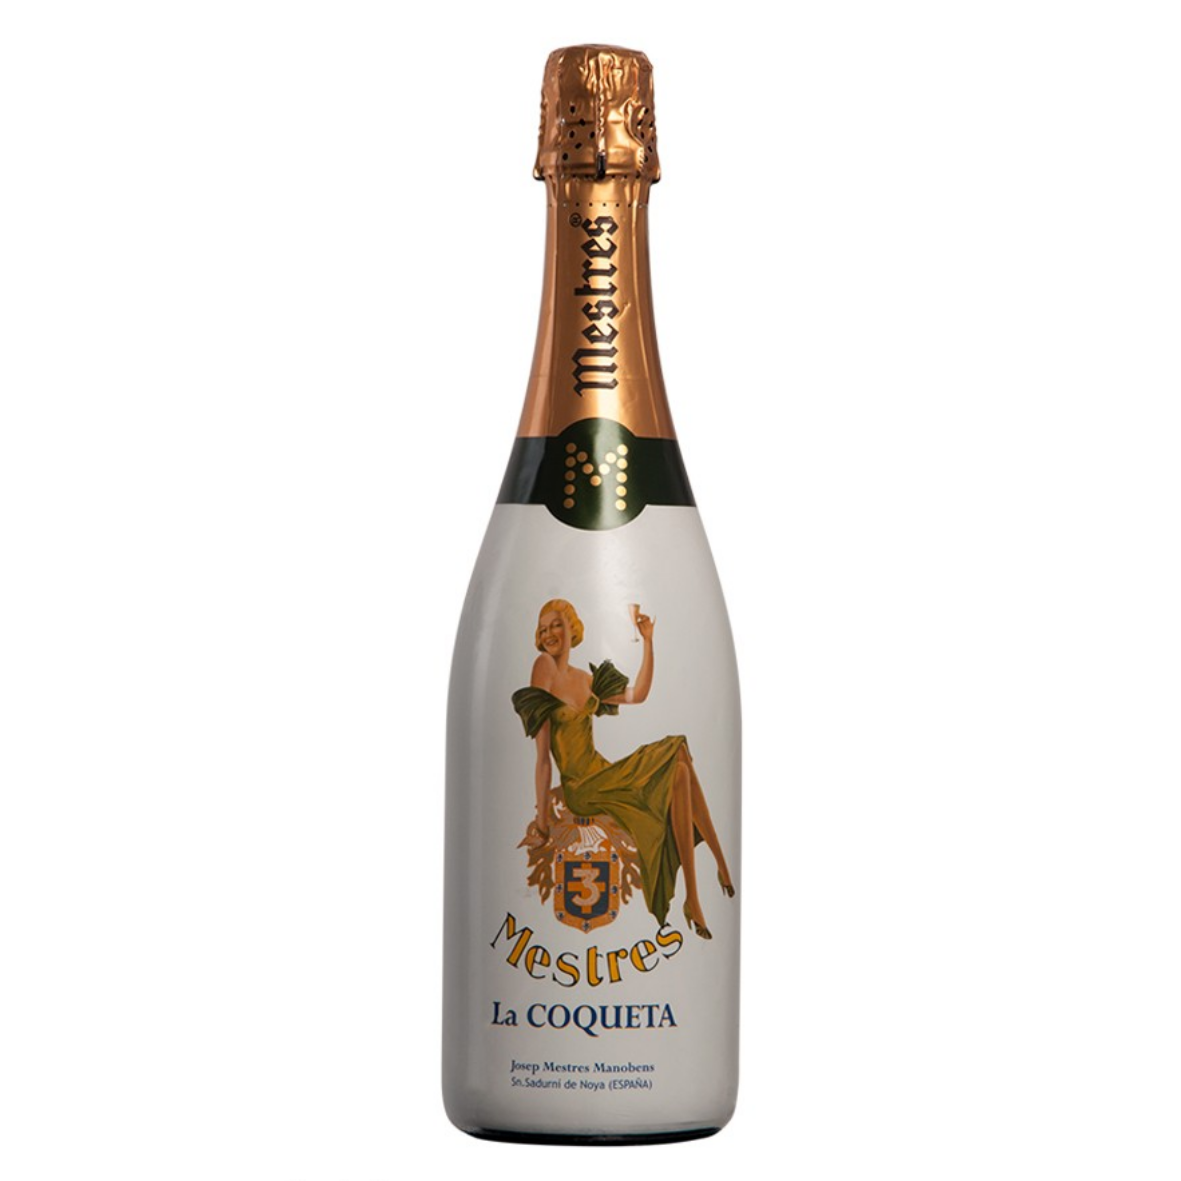 Champagne Henri Giraud _ NV - Ratafia de Champagne Solera _ 500 ml.